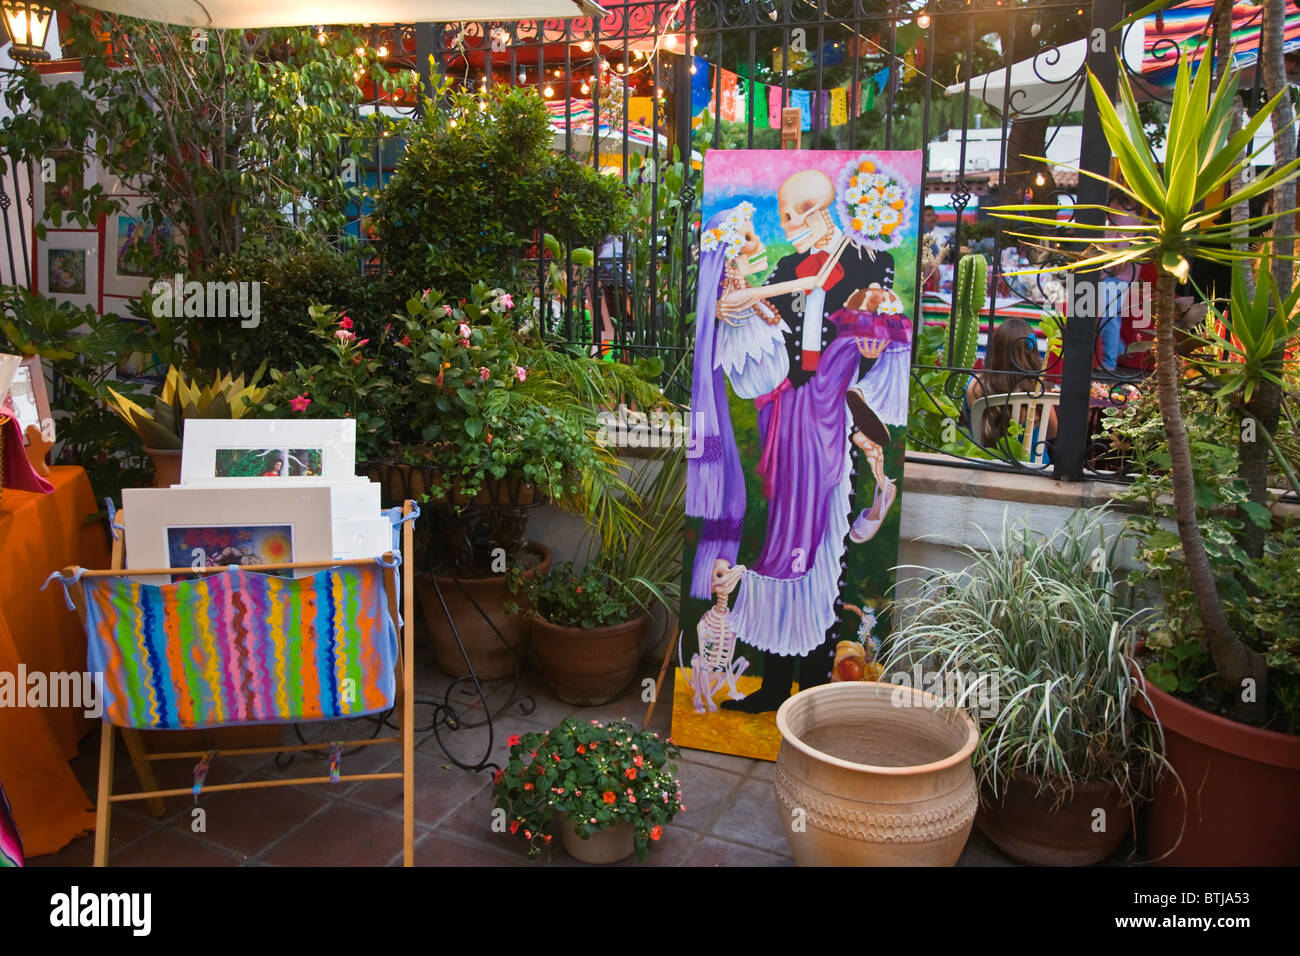 Biens mexicains pour la vente à l'ancien marché de la ville - SAN DIEGO, Californie Banque D'Images